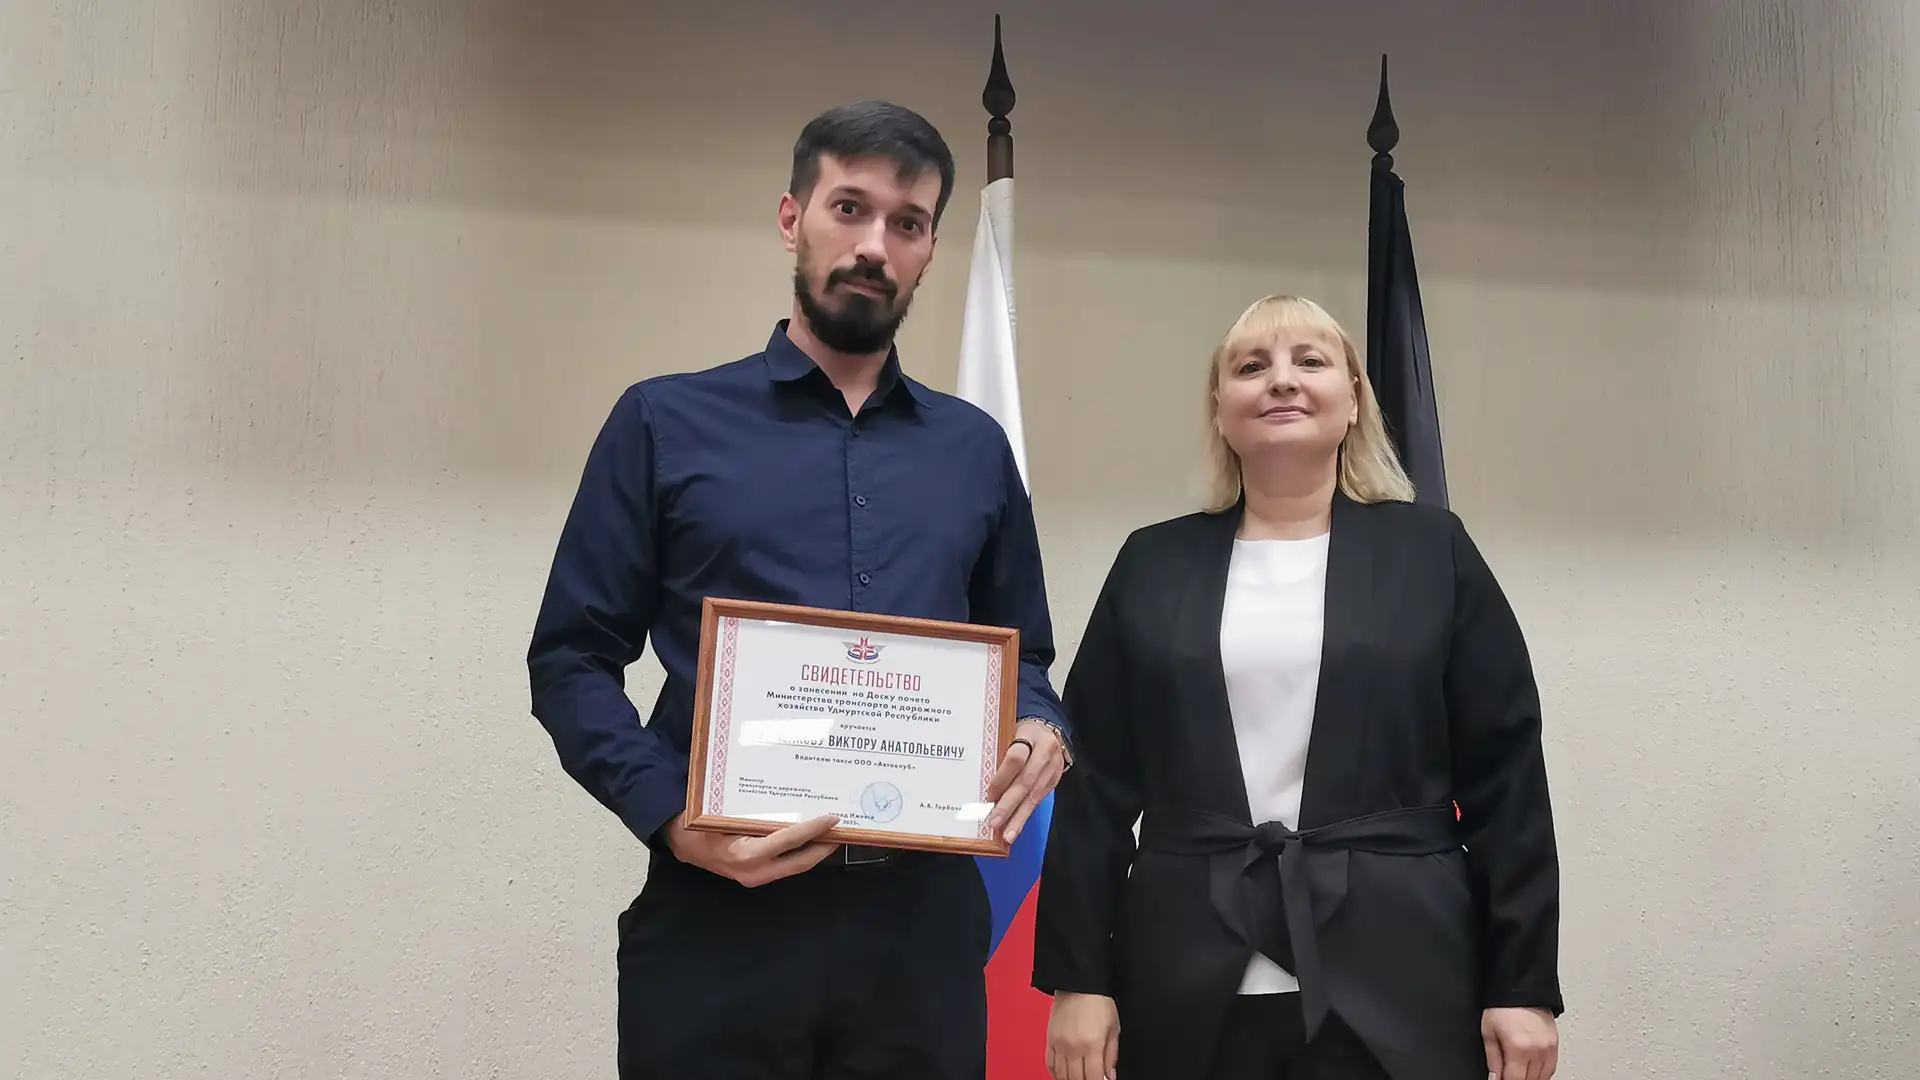 Виктора Грибченкова из Удмуртской Республики наградили благодарственным письмом от Министерства транспорта республики